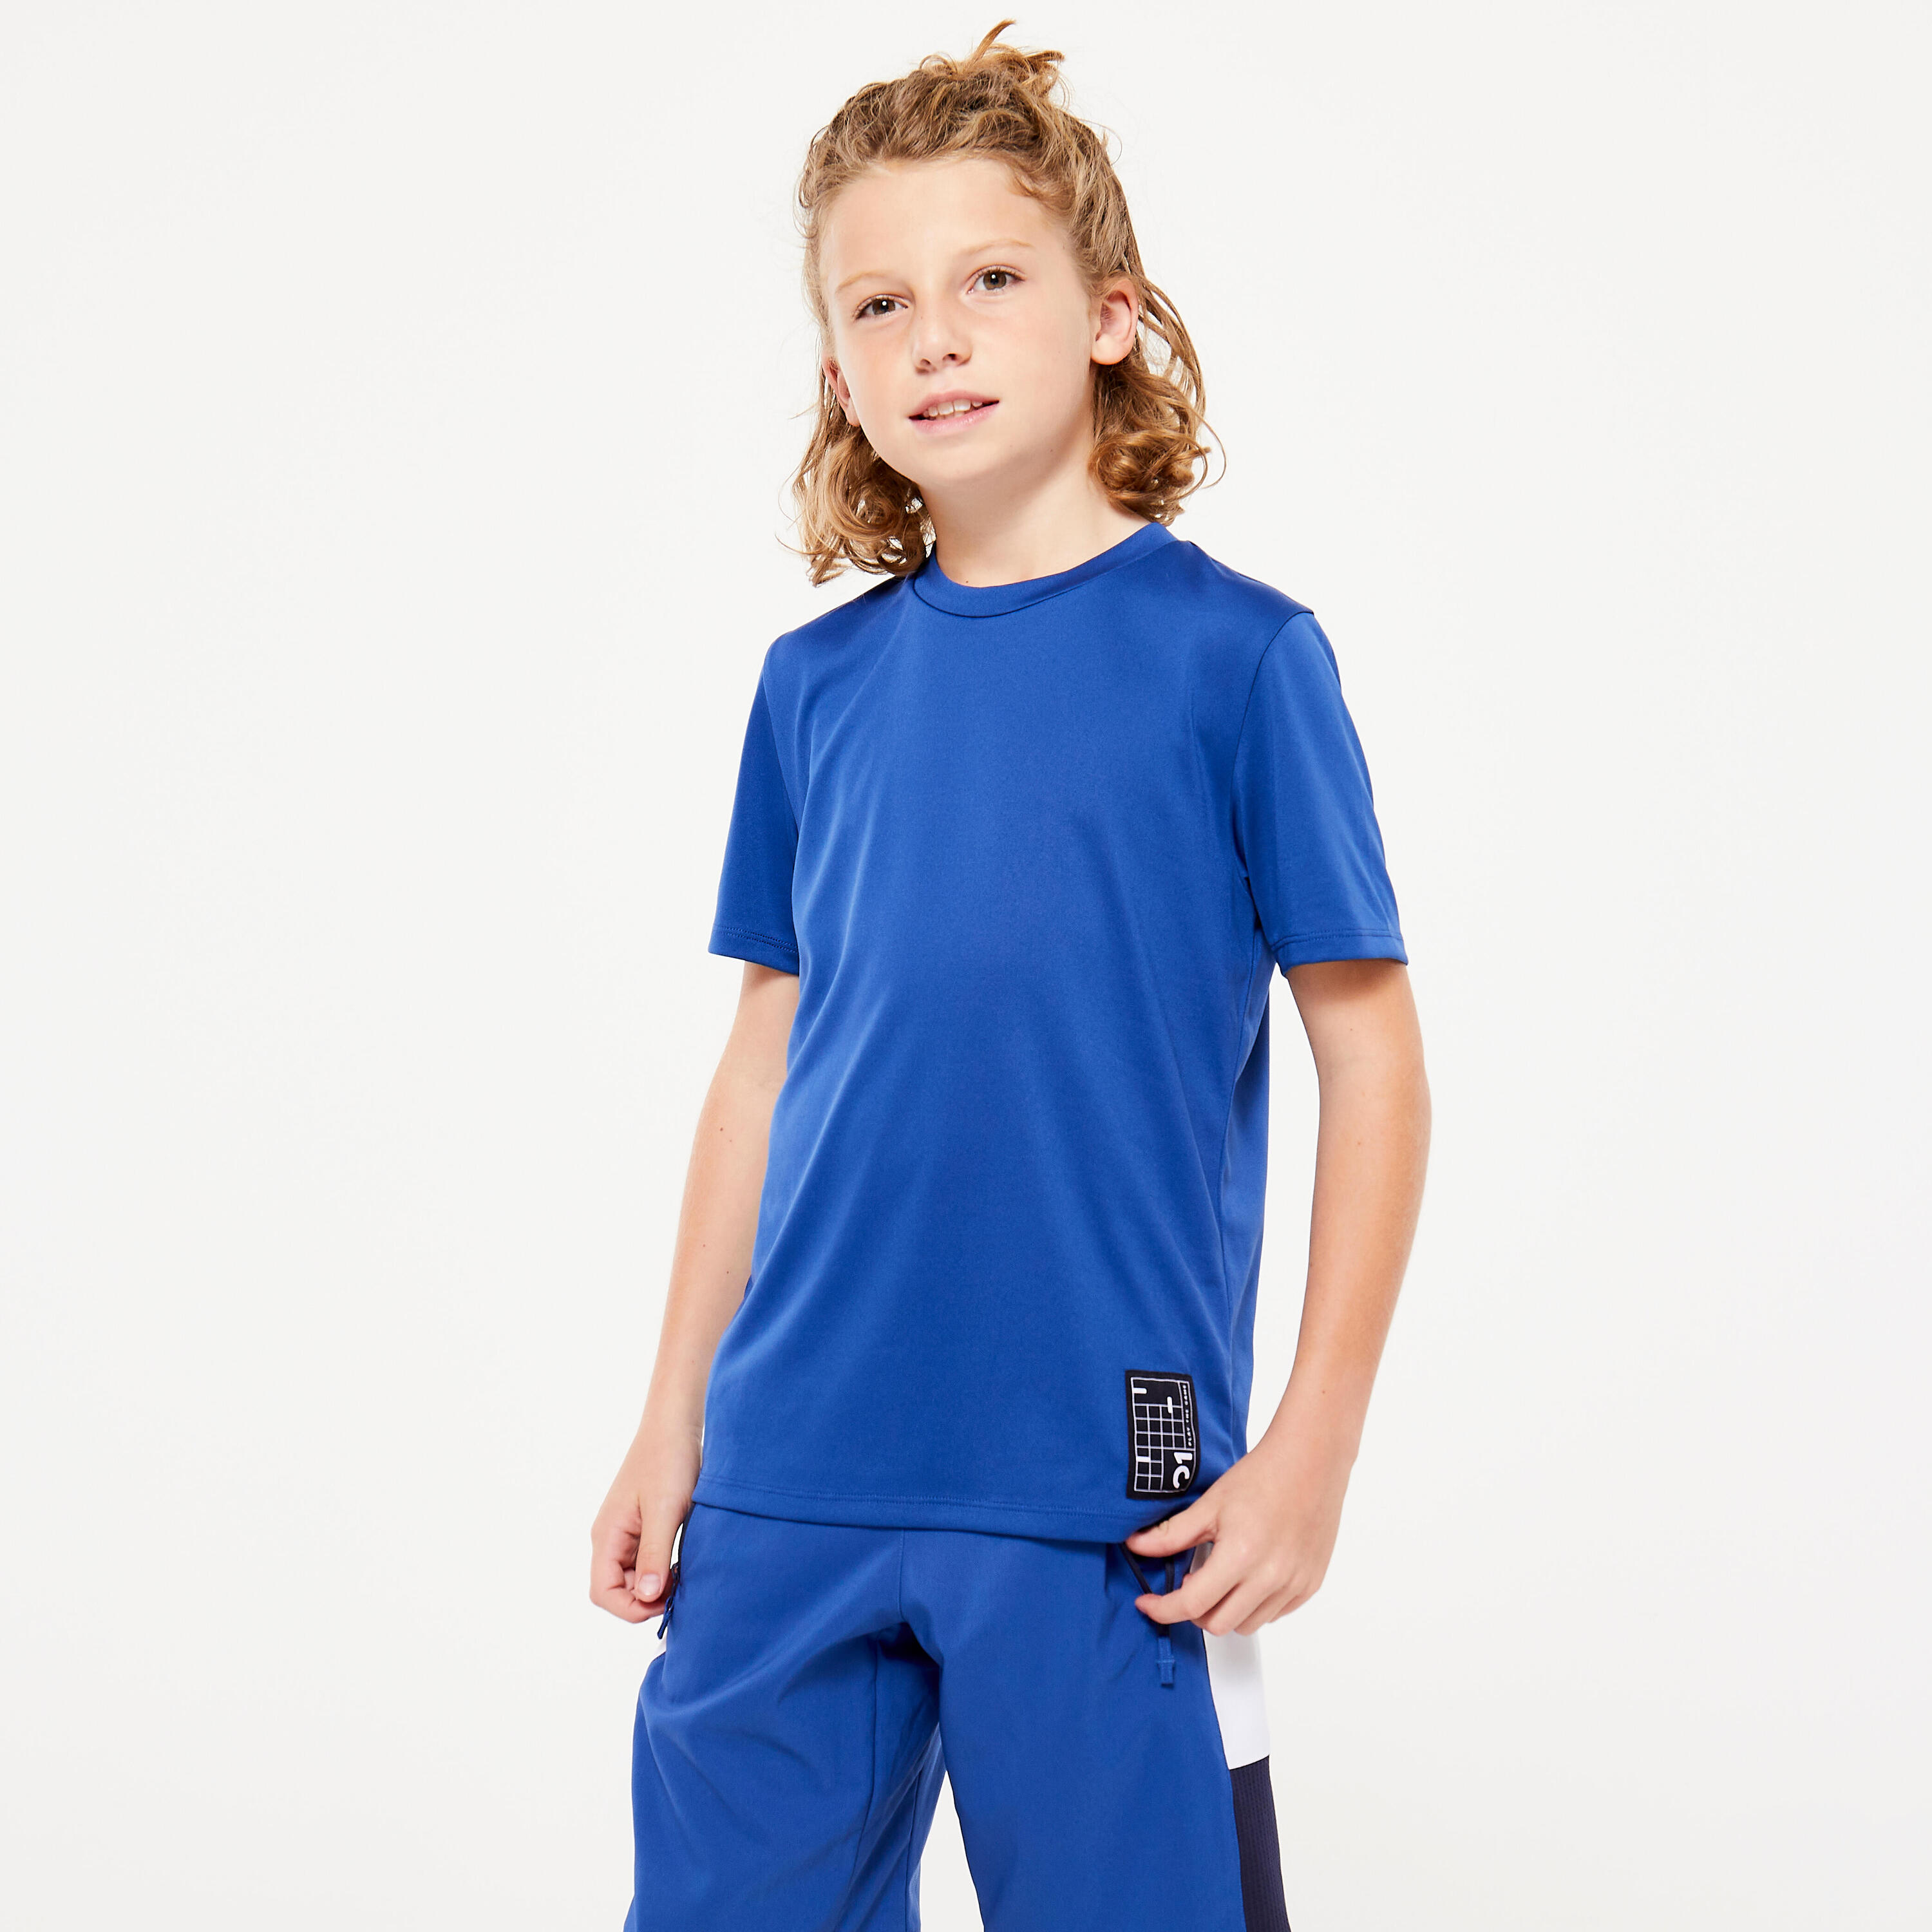 DECATHLON Kids' Technical T-Shirt - Sapphire Blue